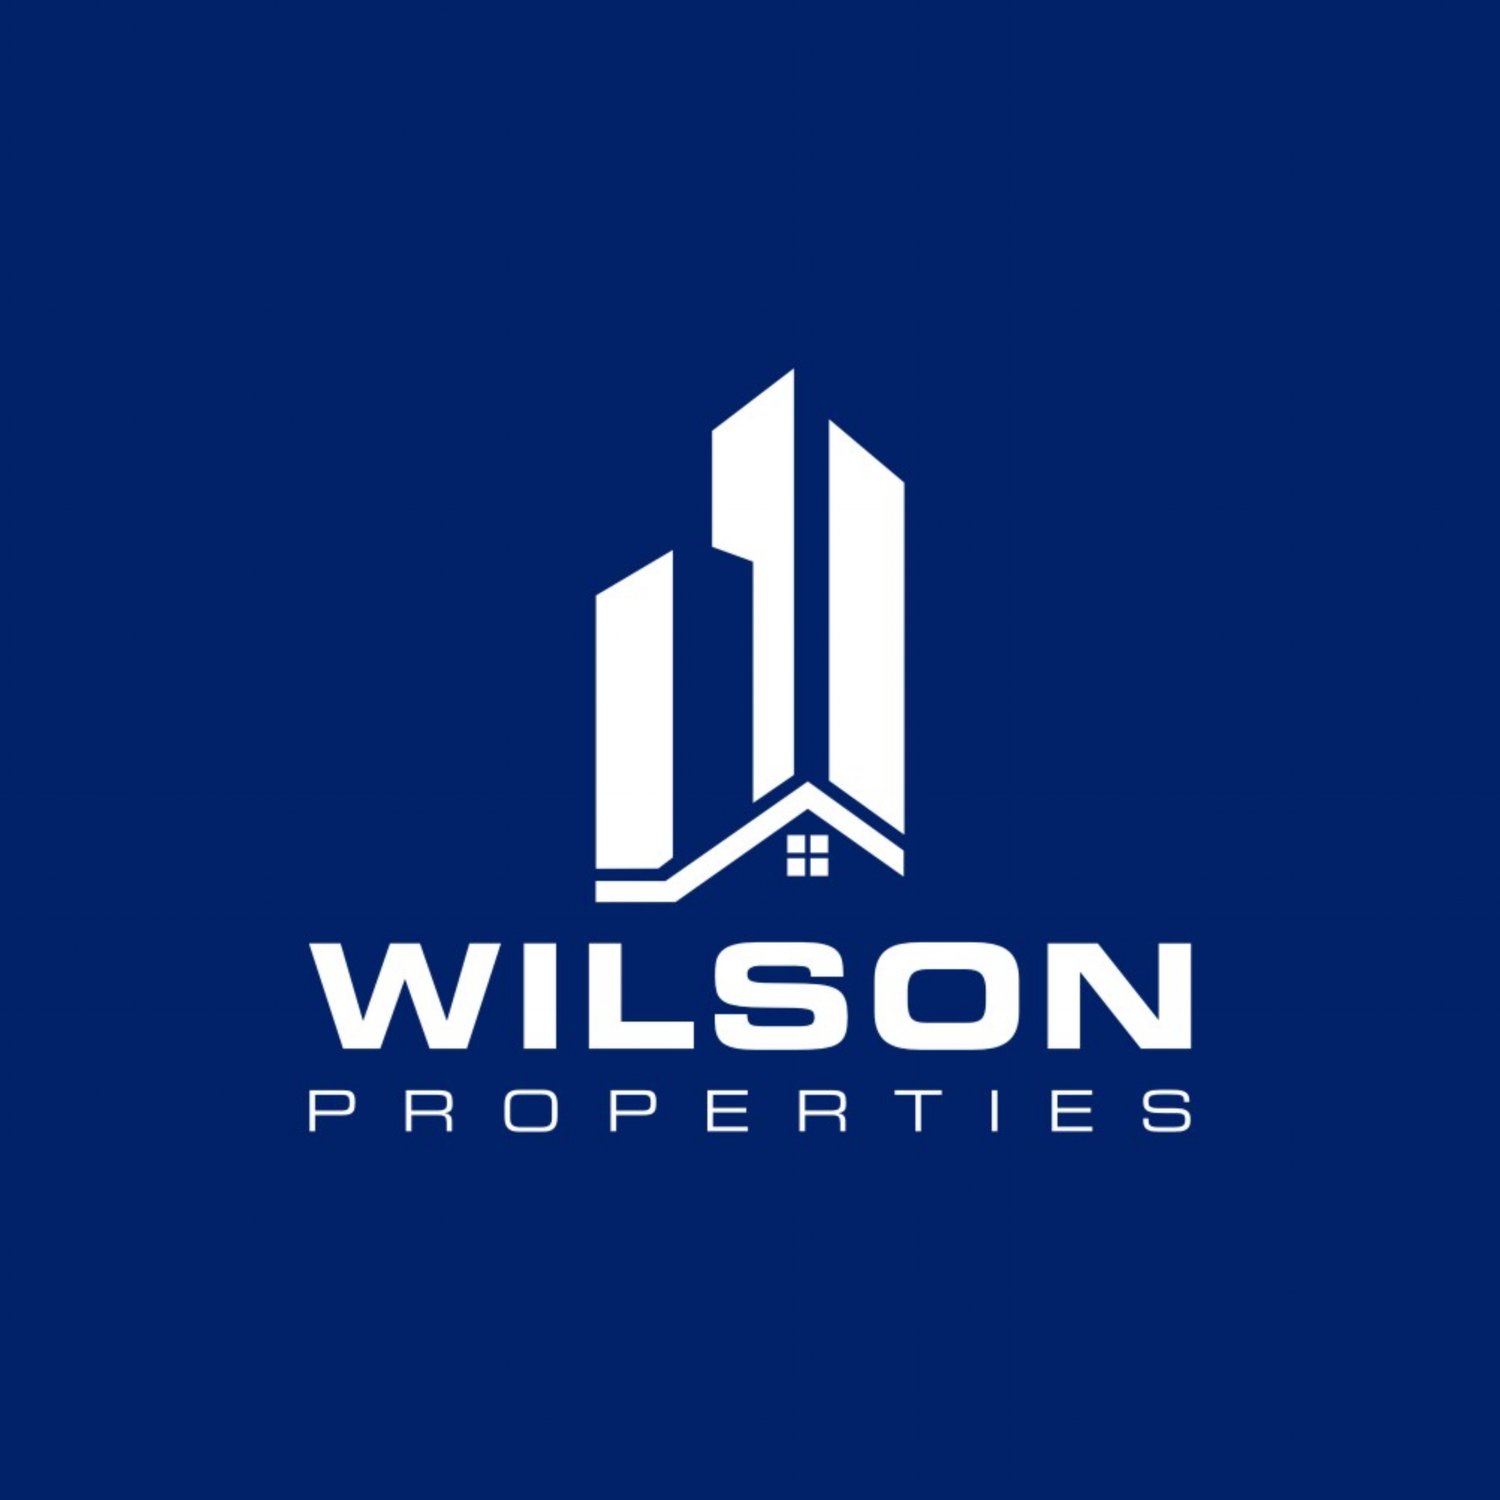 Wilson Properties